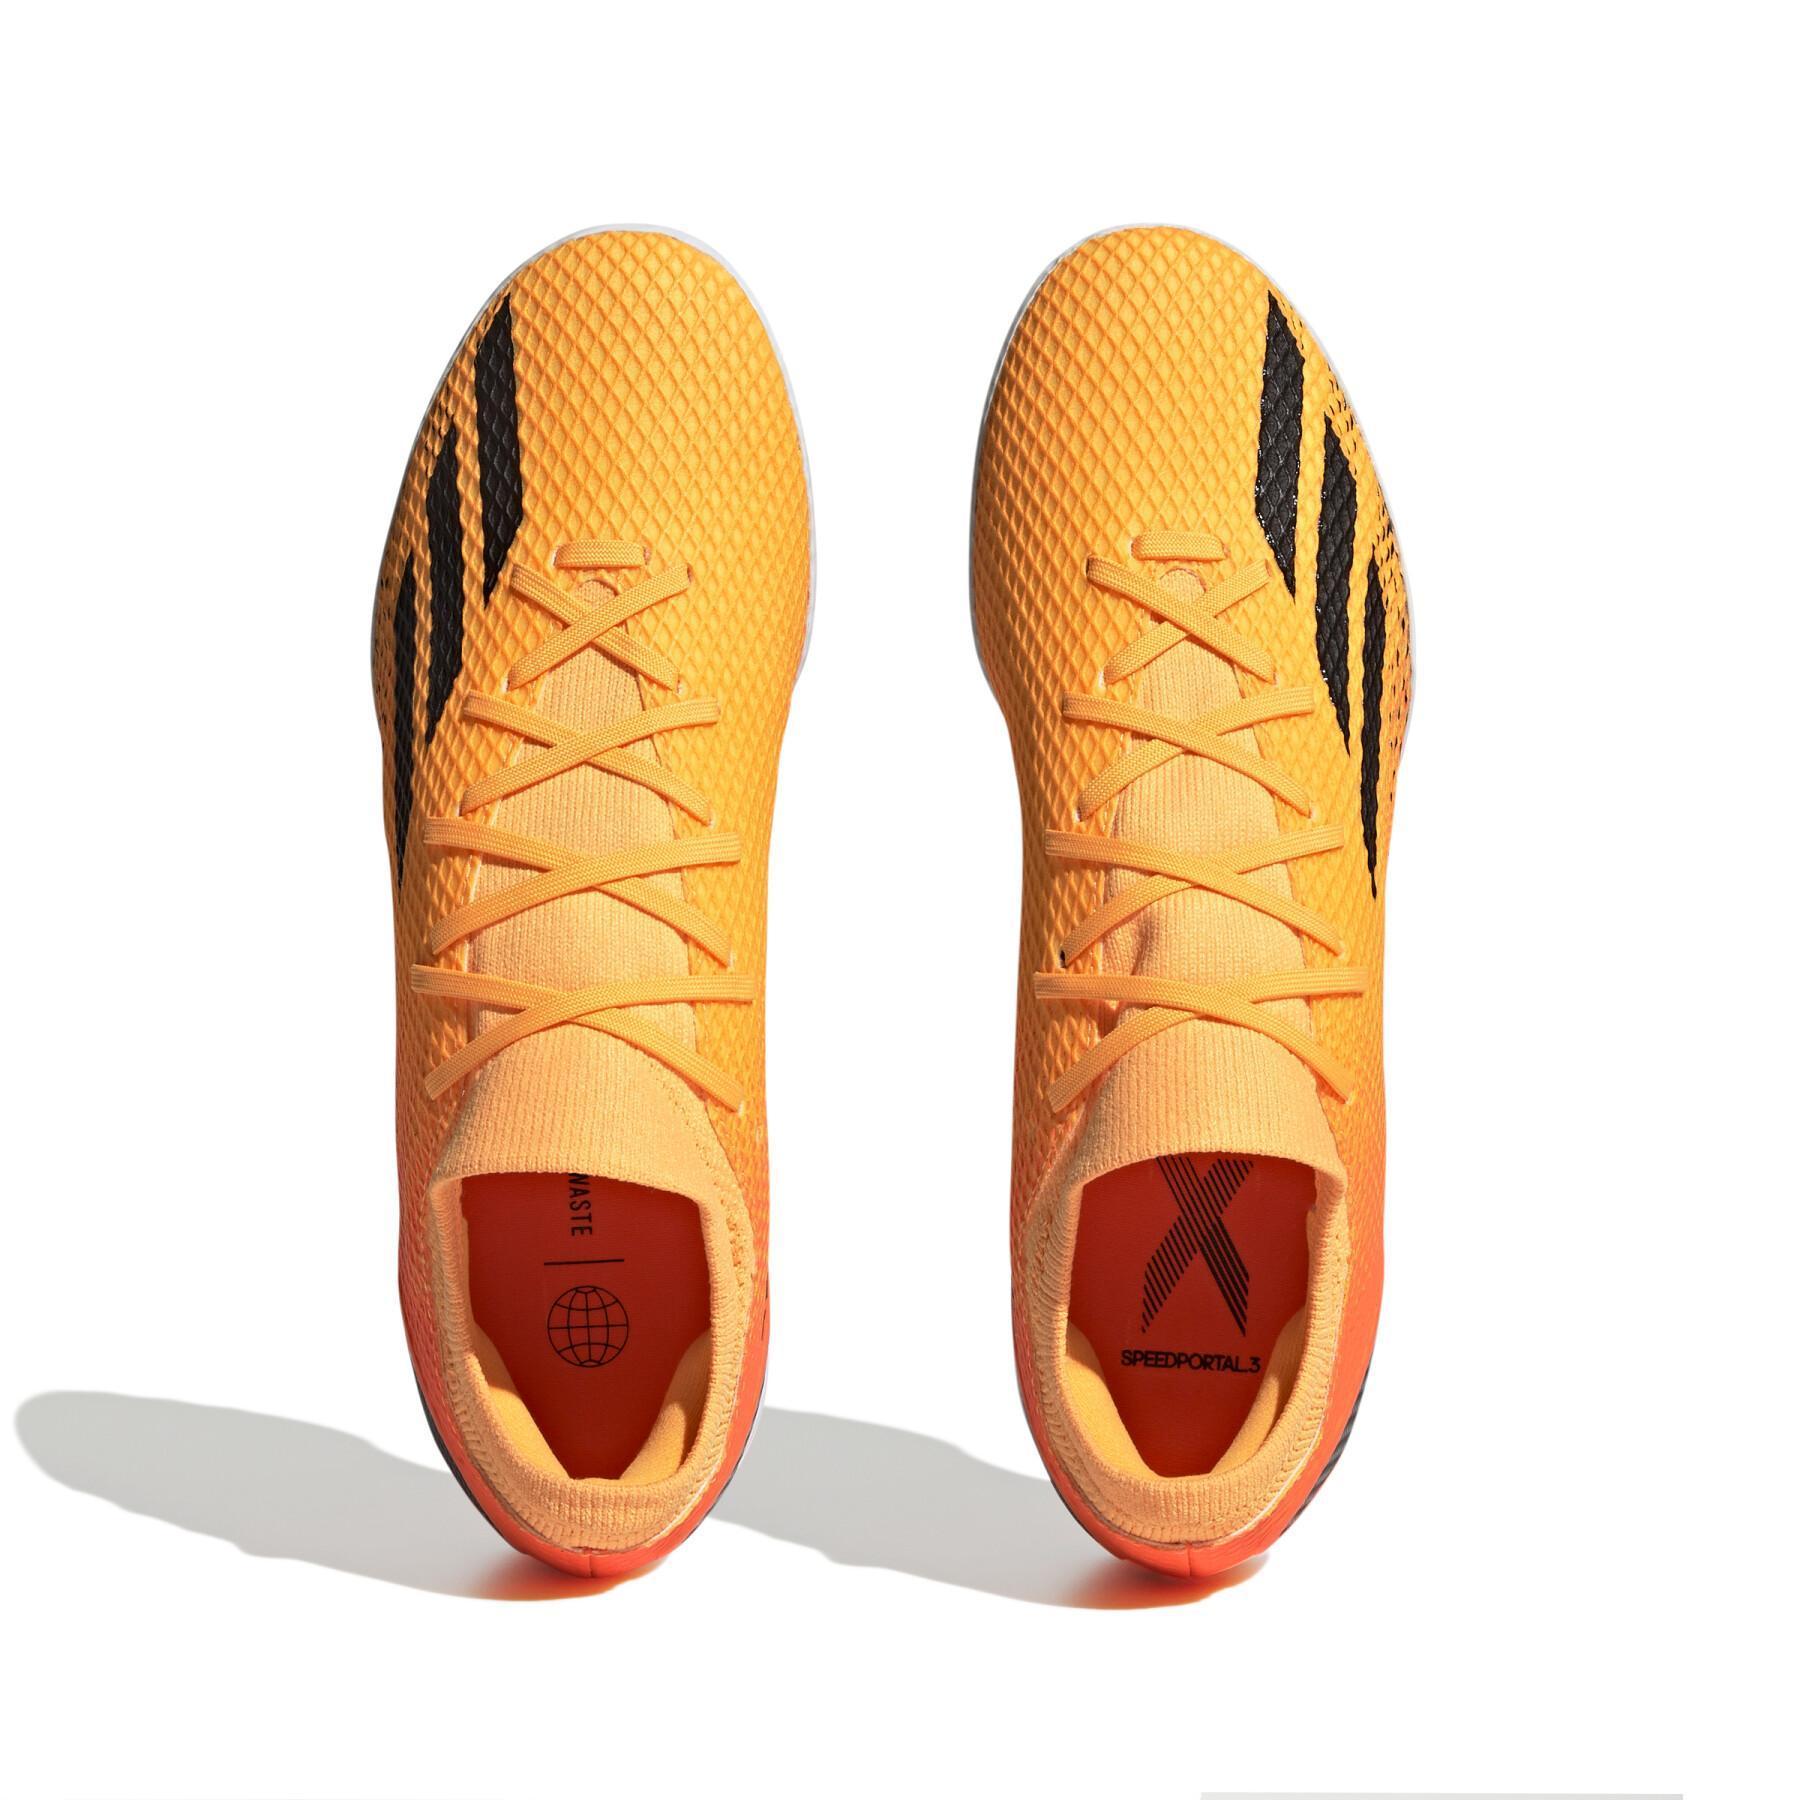 Voetbalschoenen adidas X Speedportal.3 Tf Heatspawn Pack